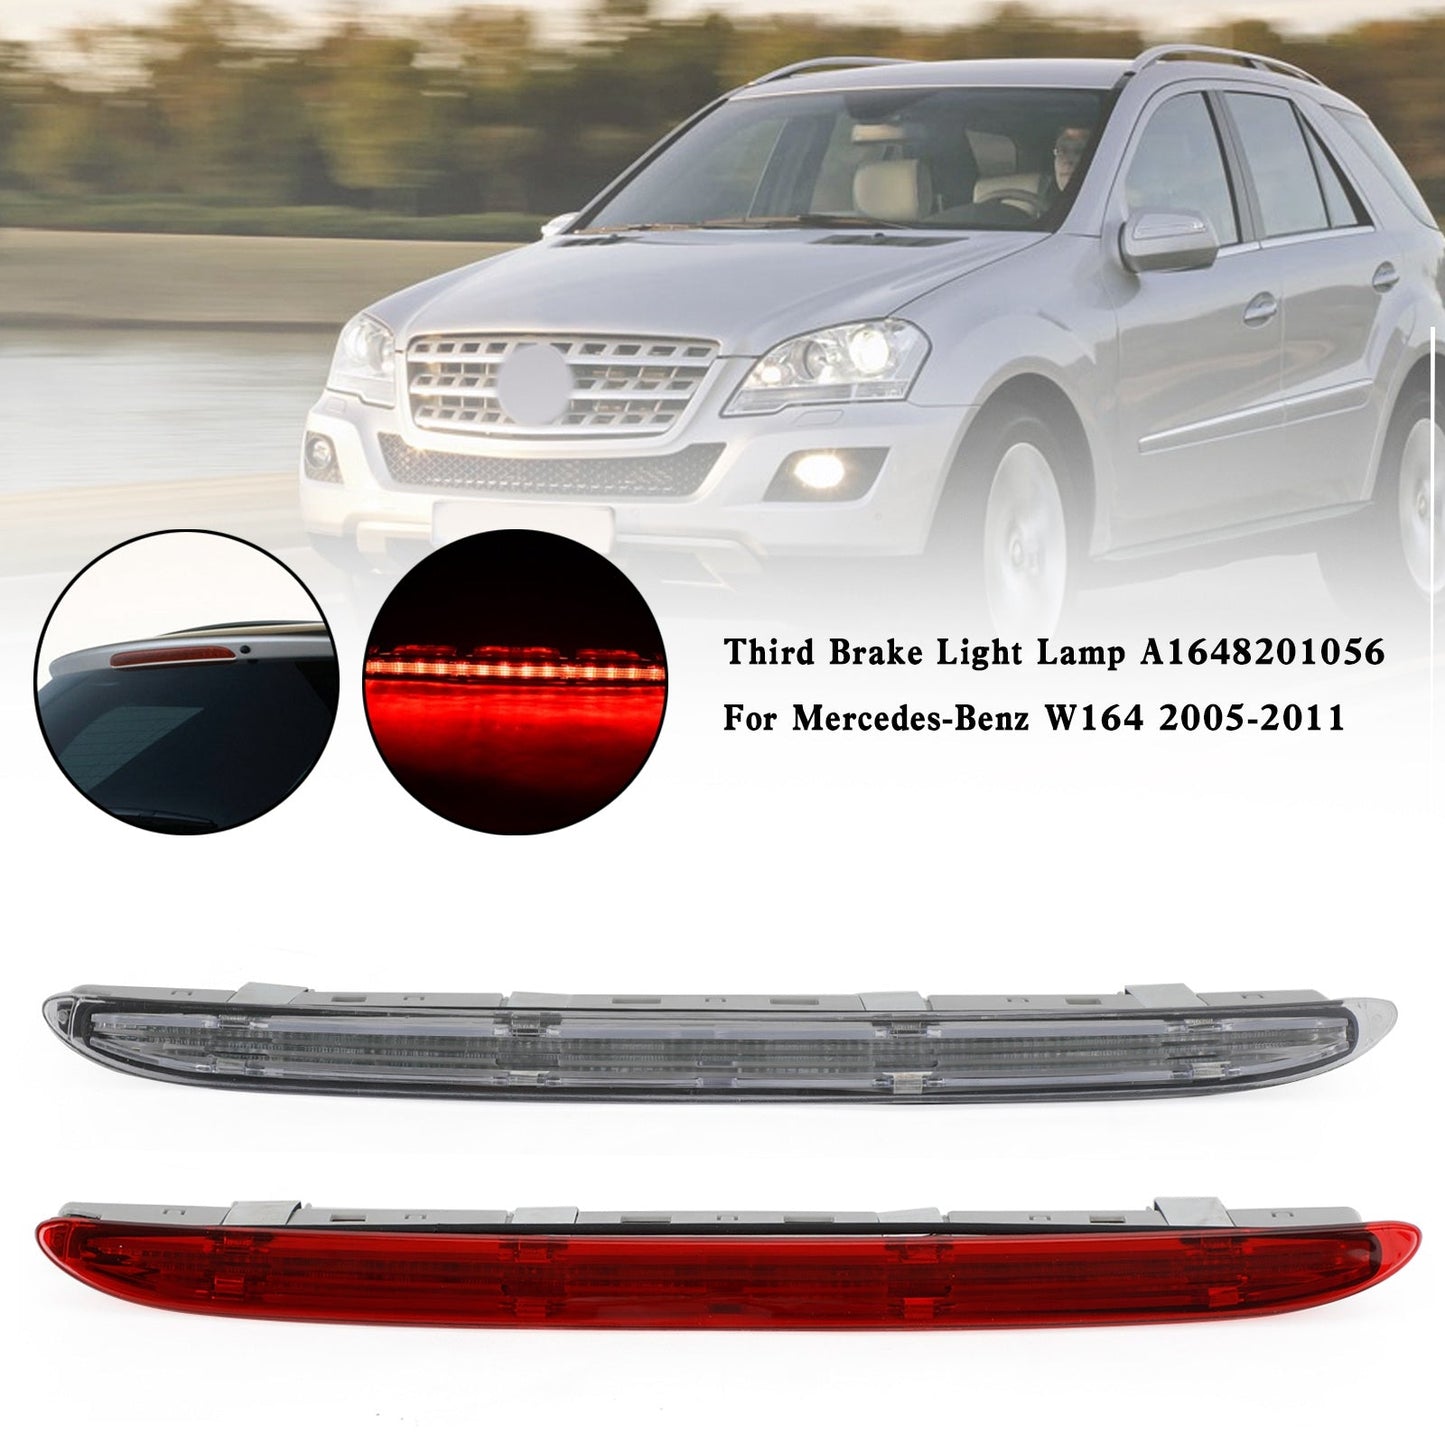 2005-2011 Mercedes-Benz W164 Red Third Brake Light Lamp A1648201056